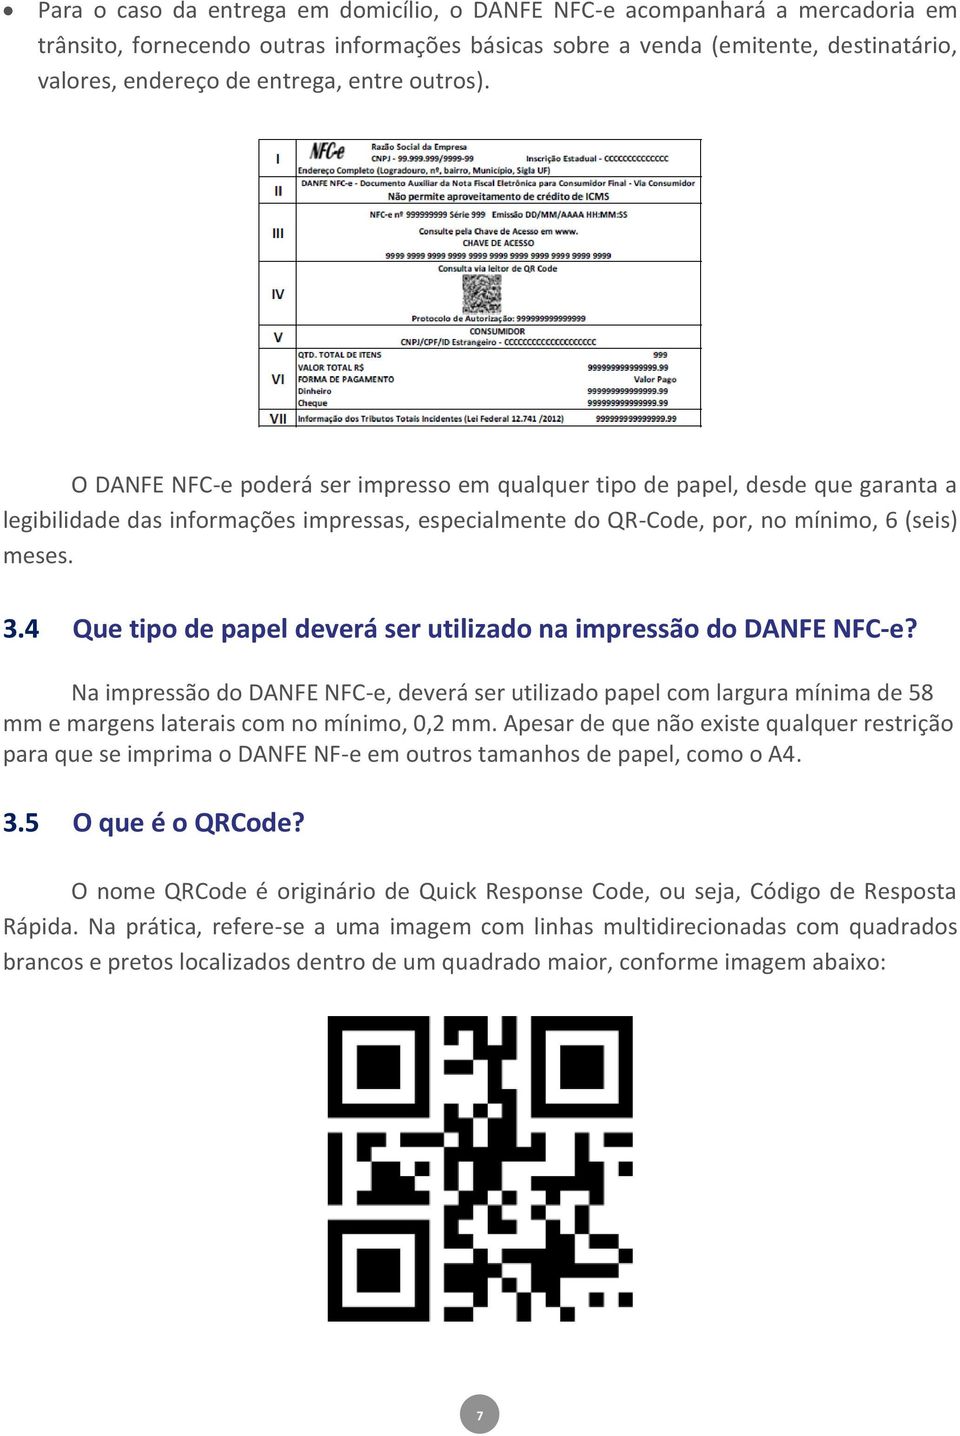 4 Que tipo de papel deverá ser utilizado na impressão do DANFE NFC-e? Na impressão do DANFE NFC-e, deverá ser utilizado papel com largura mínima de 58 mm e margens laterais com no mínimo, 0,2 mm.